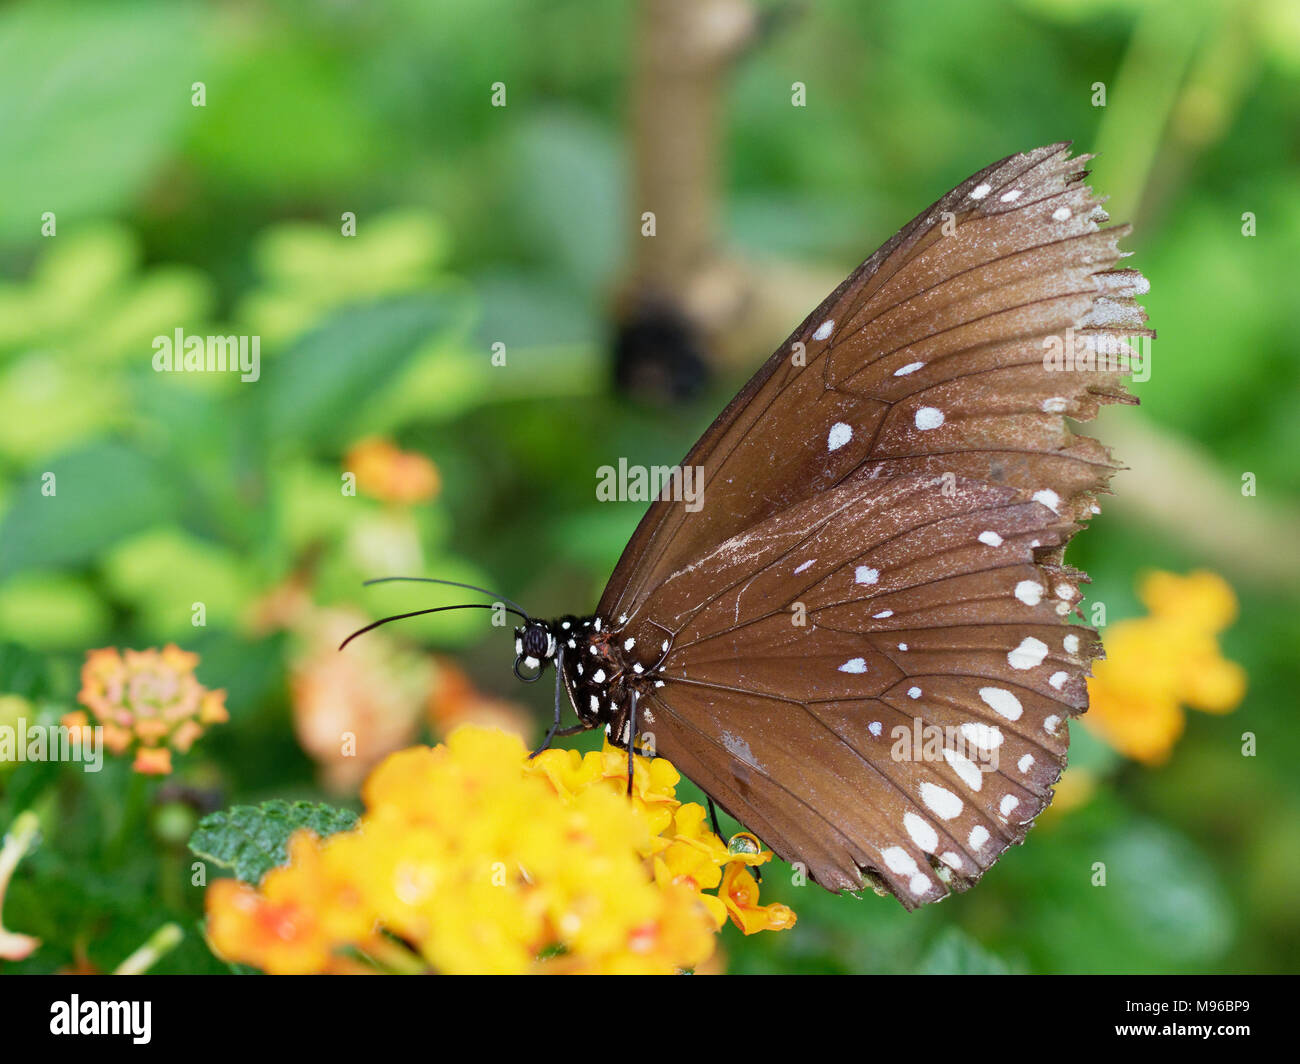 Schmetterling schwarz mit weißen Fleck in der Nähe aufsaugen oder Nektar Saft einer gelben Blüte Blume über grünes Blatt Hintergrund in einem Garten Stockfoto